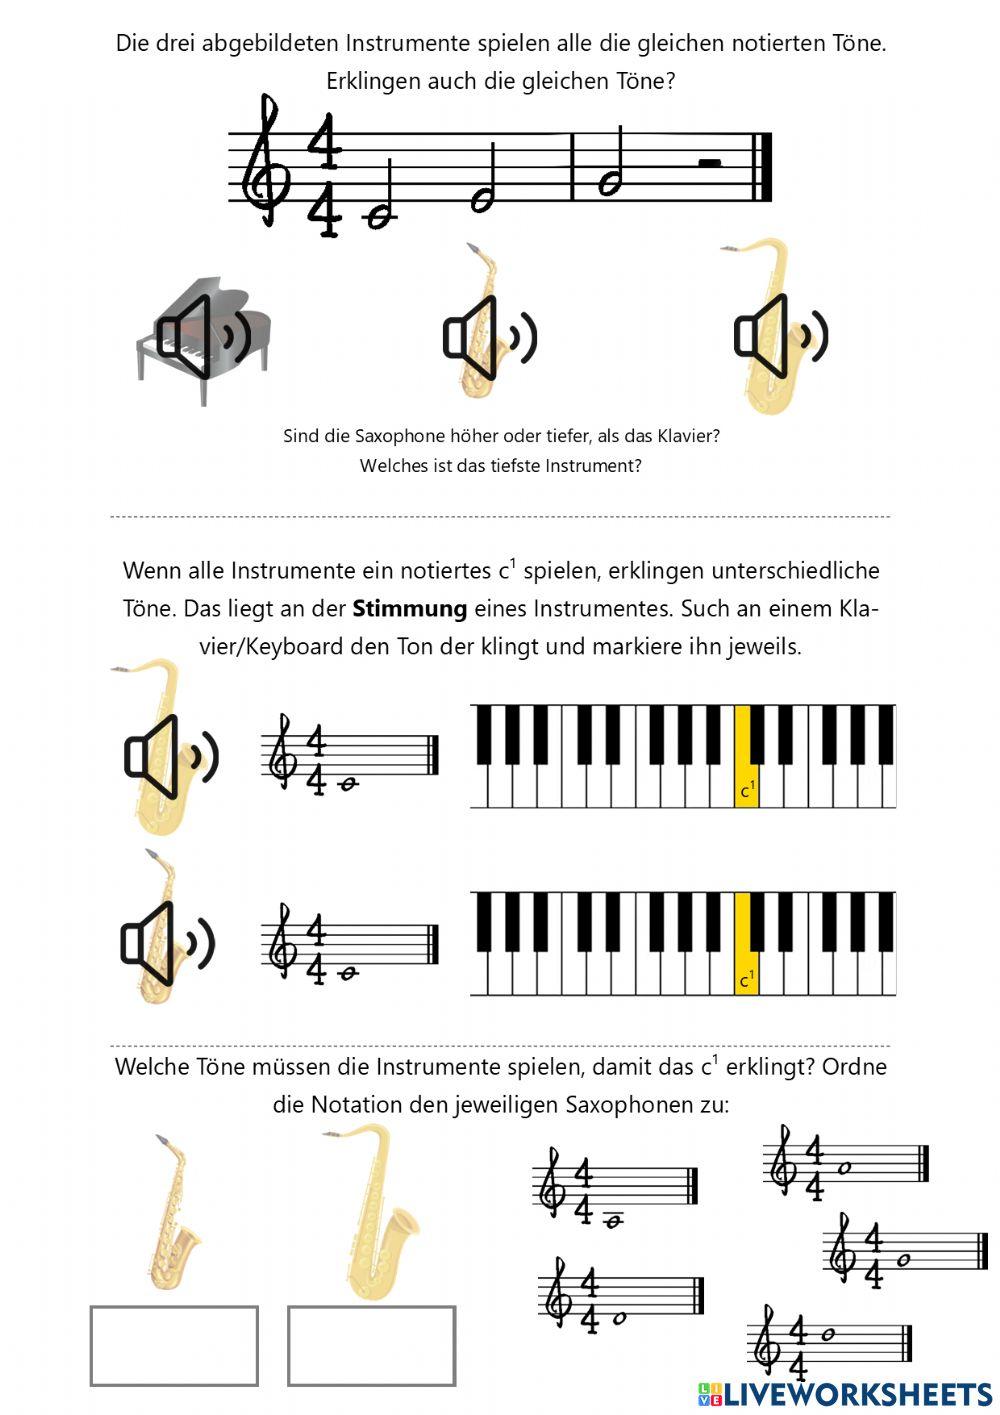 Transponierende Instrumente (Saxophon)